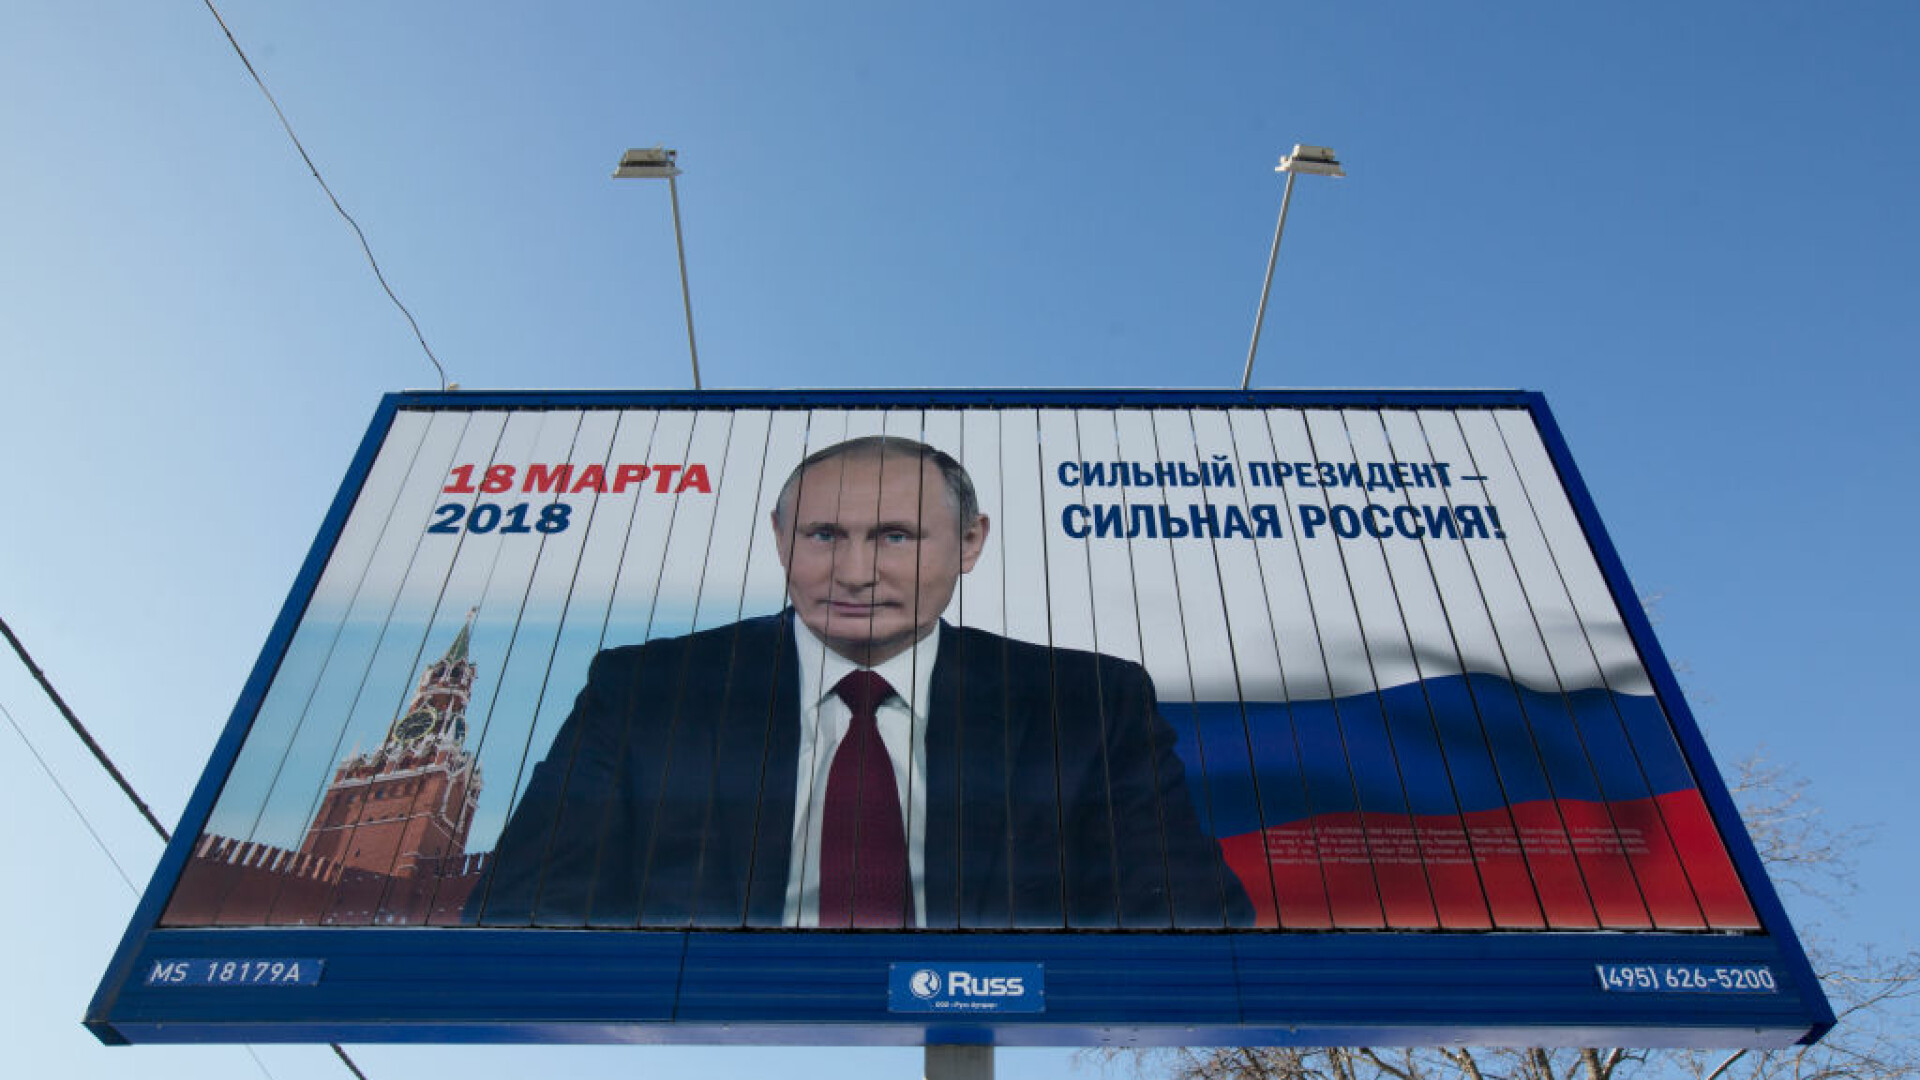 afis electoral pentru alegerile prezidentiale din Rusia